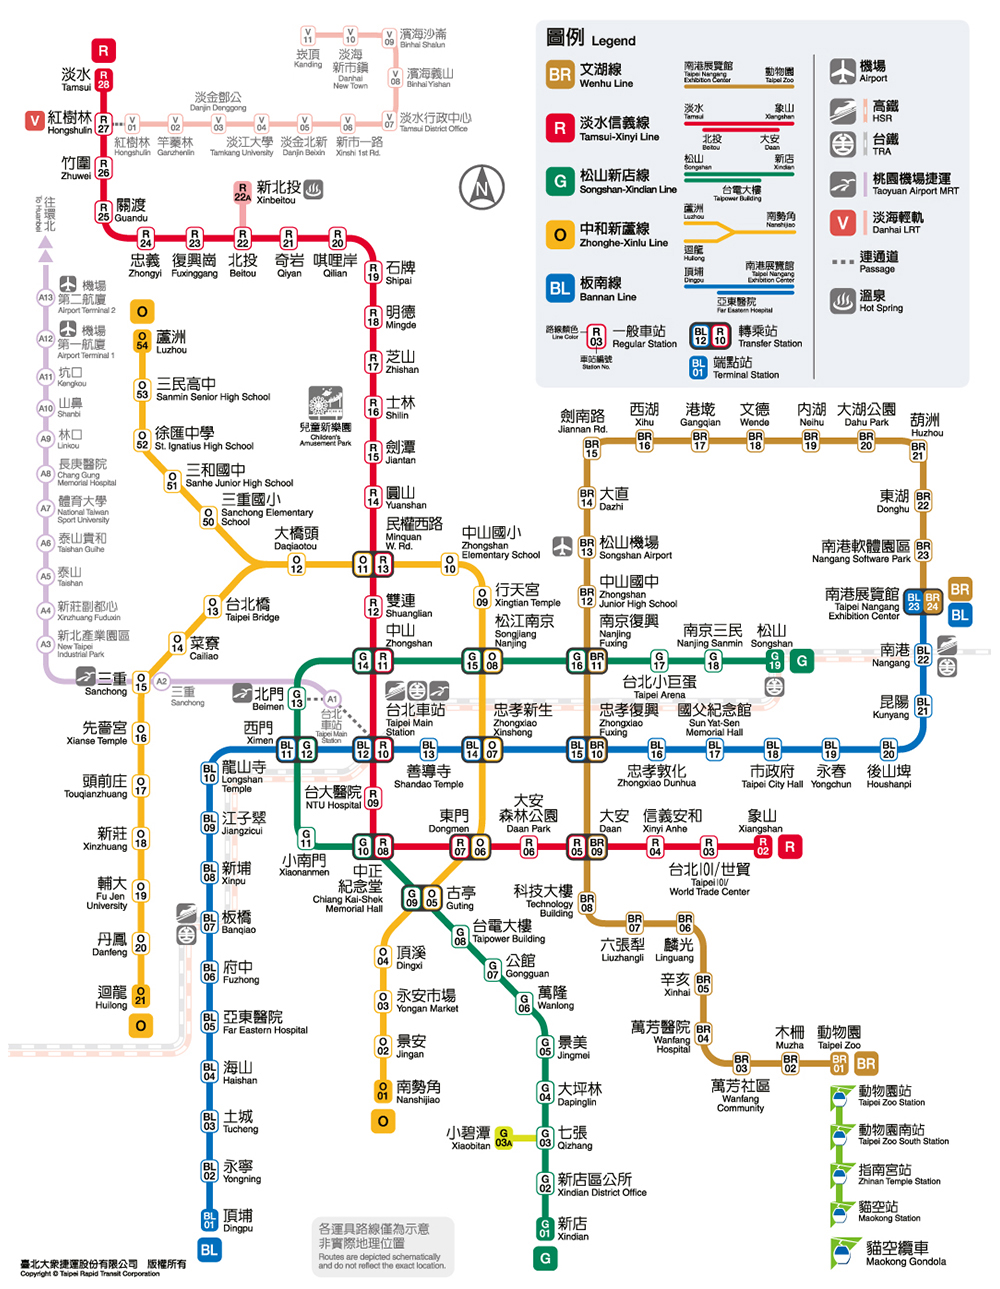 臺北捷運路網圖